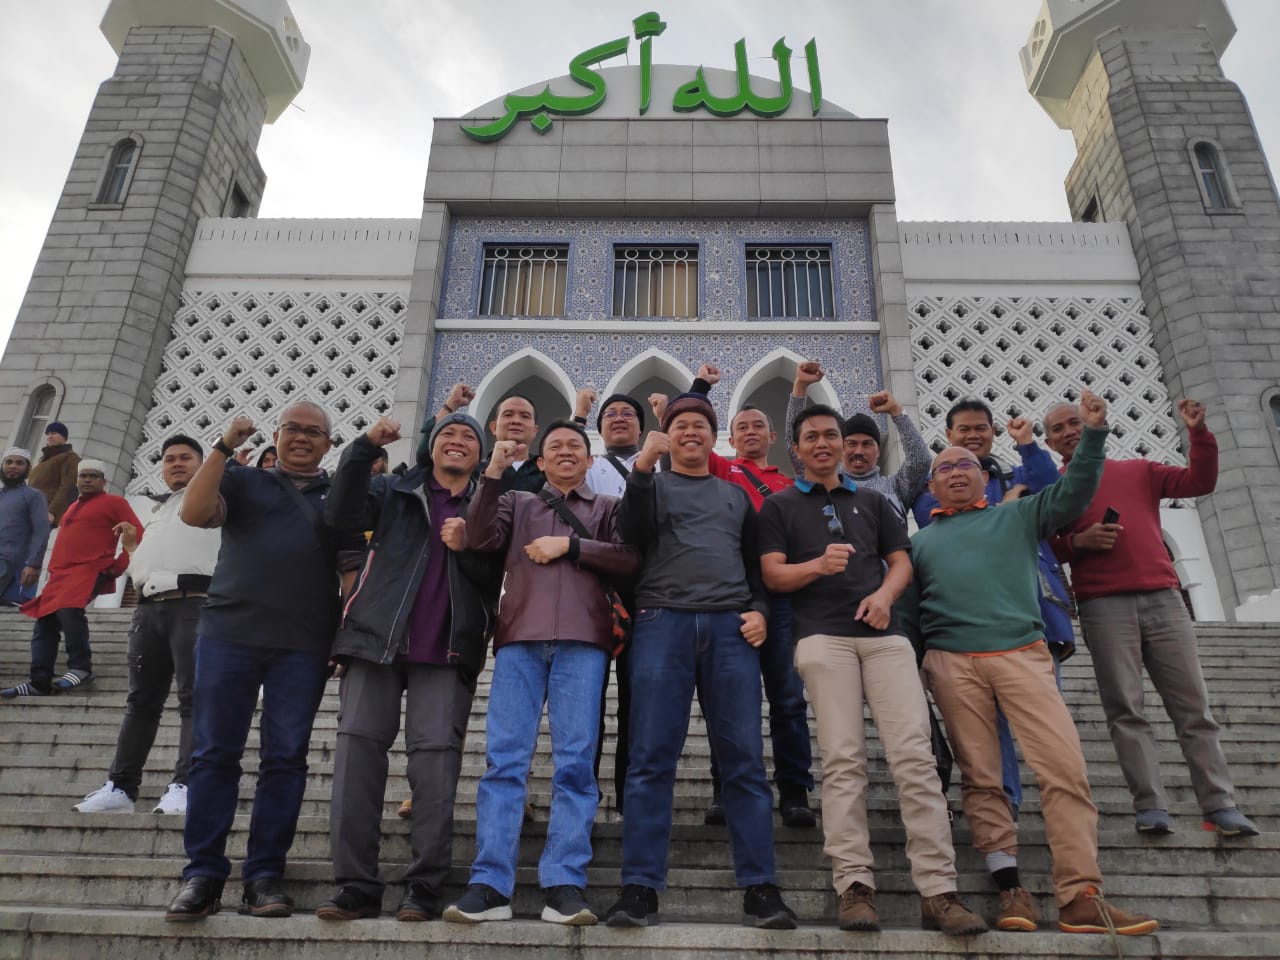 Delapan Masjid Atau Mushola Yang Bisa Dikunjungi Waktu Jalan-Jalan ke Korea Selatan